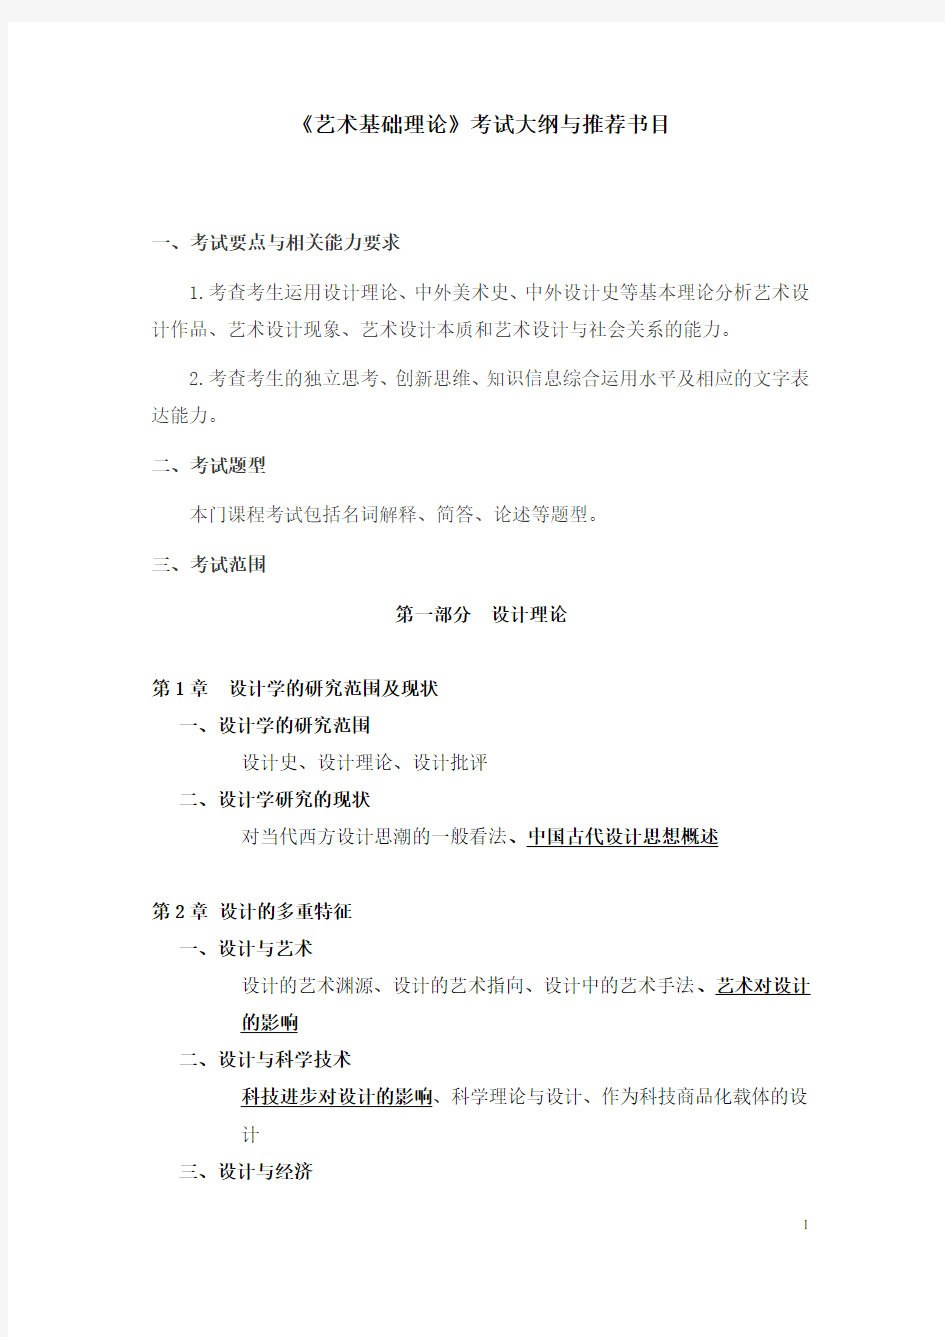 2020北京印刷学院《艺术基础理论》-艺术设计-考试大纲及推荐书目